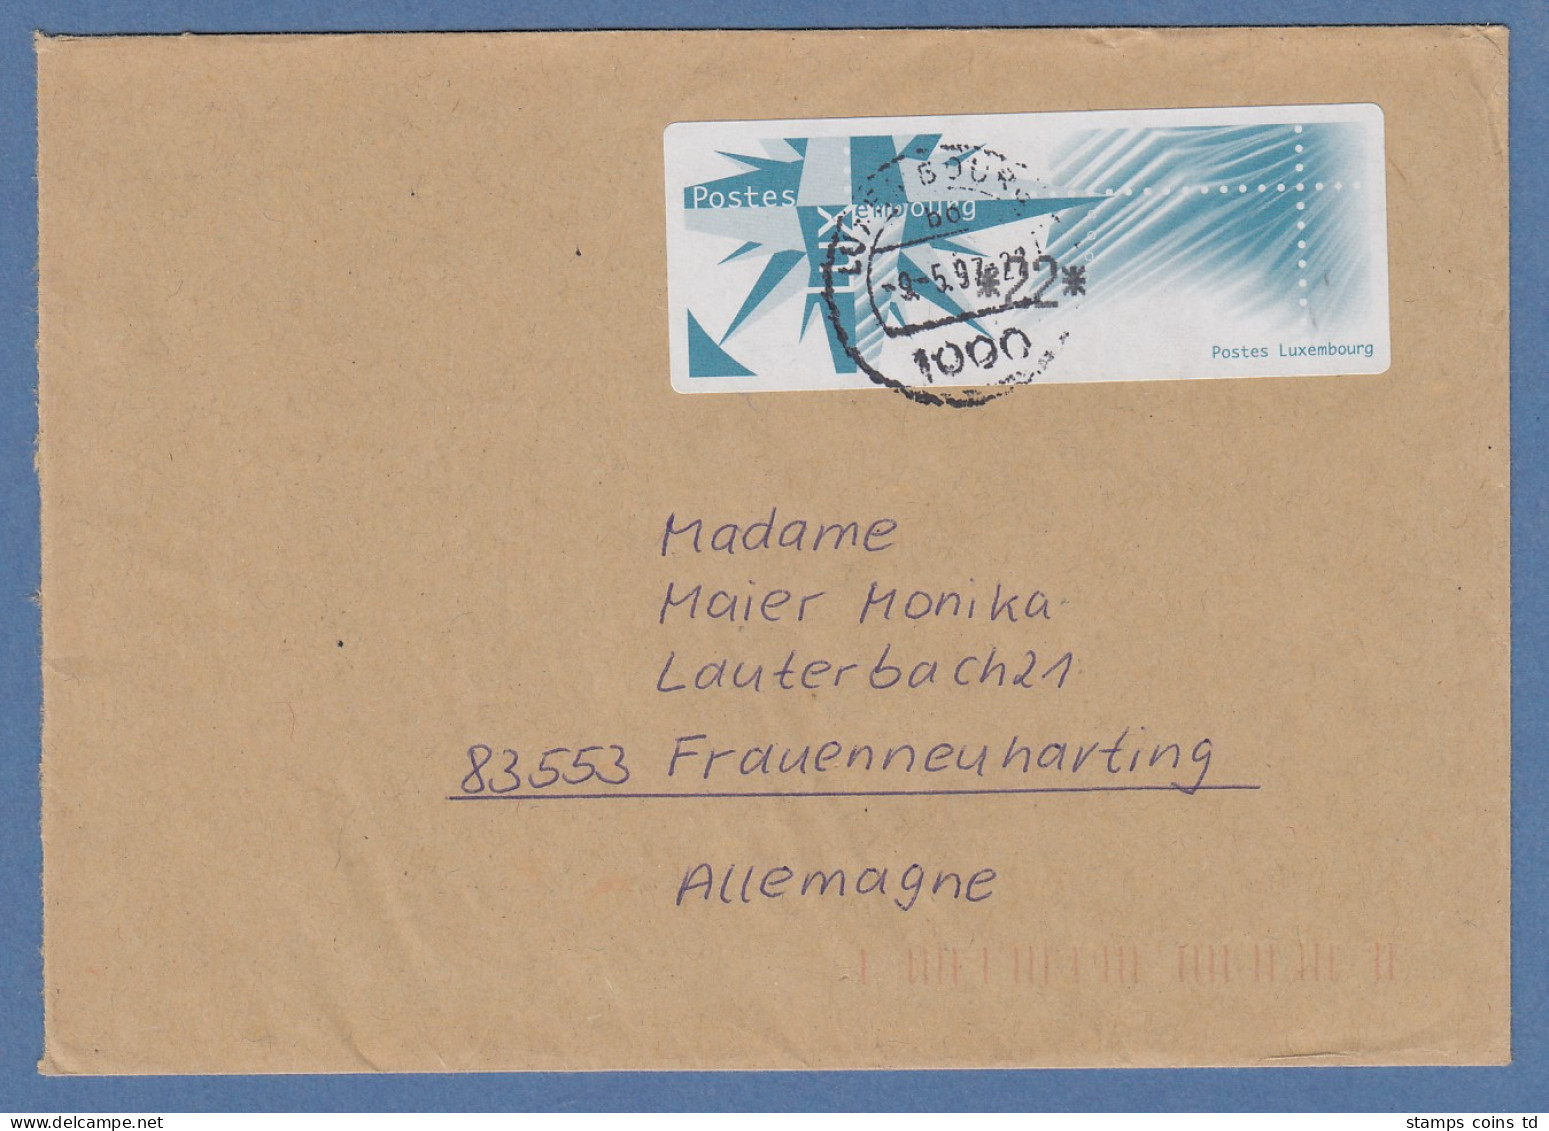 Luxemburg ATM Monétel Windrose Mi.-Nr. 4 Wert 22 Auf Brief Nach D. O 9.5.97 - Postage Labels